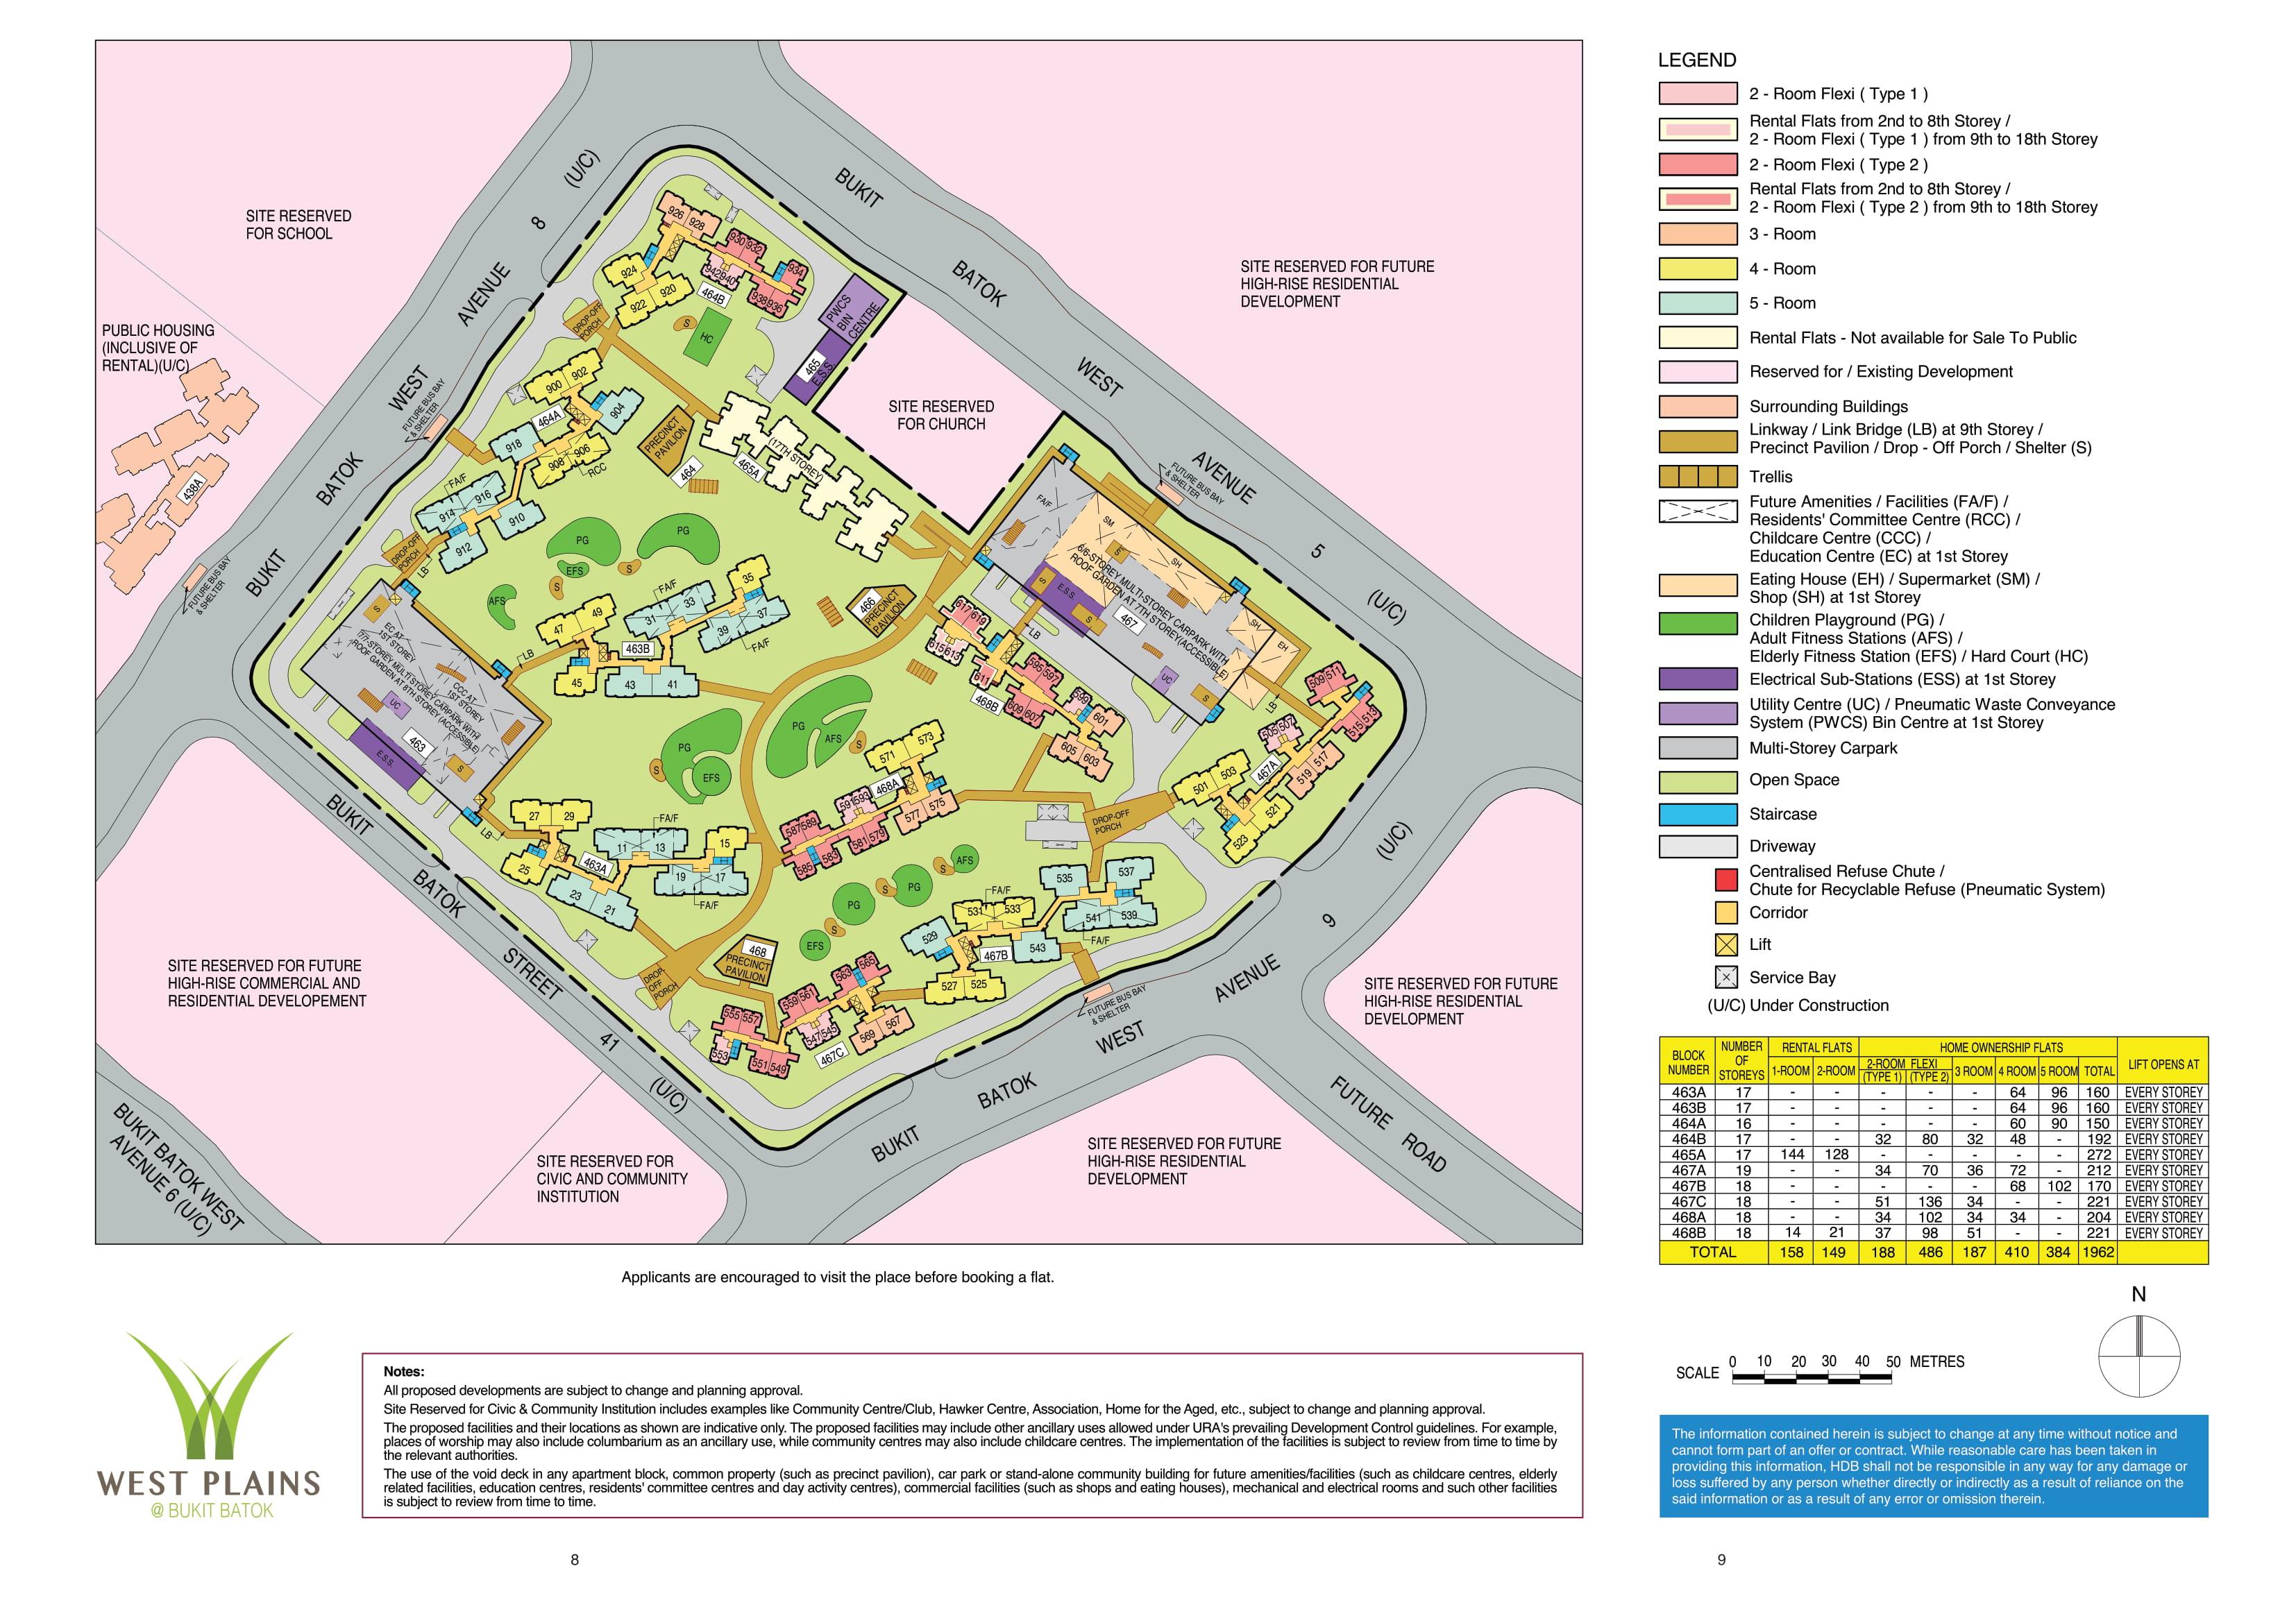 West Plains @ Bukit Batok site-plan